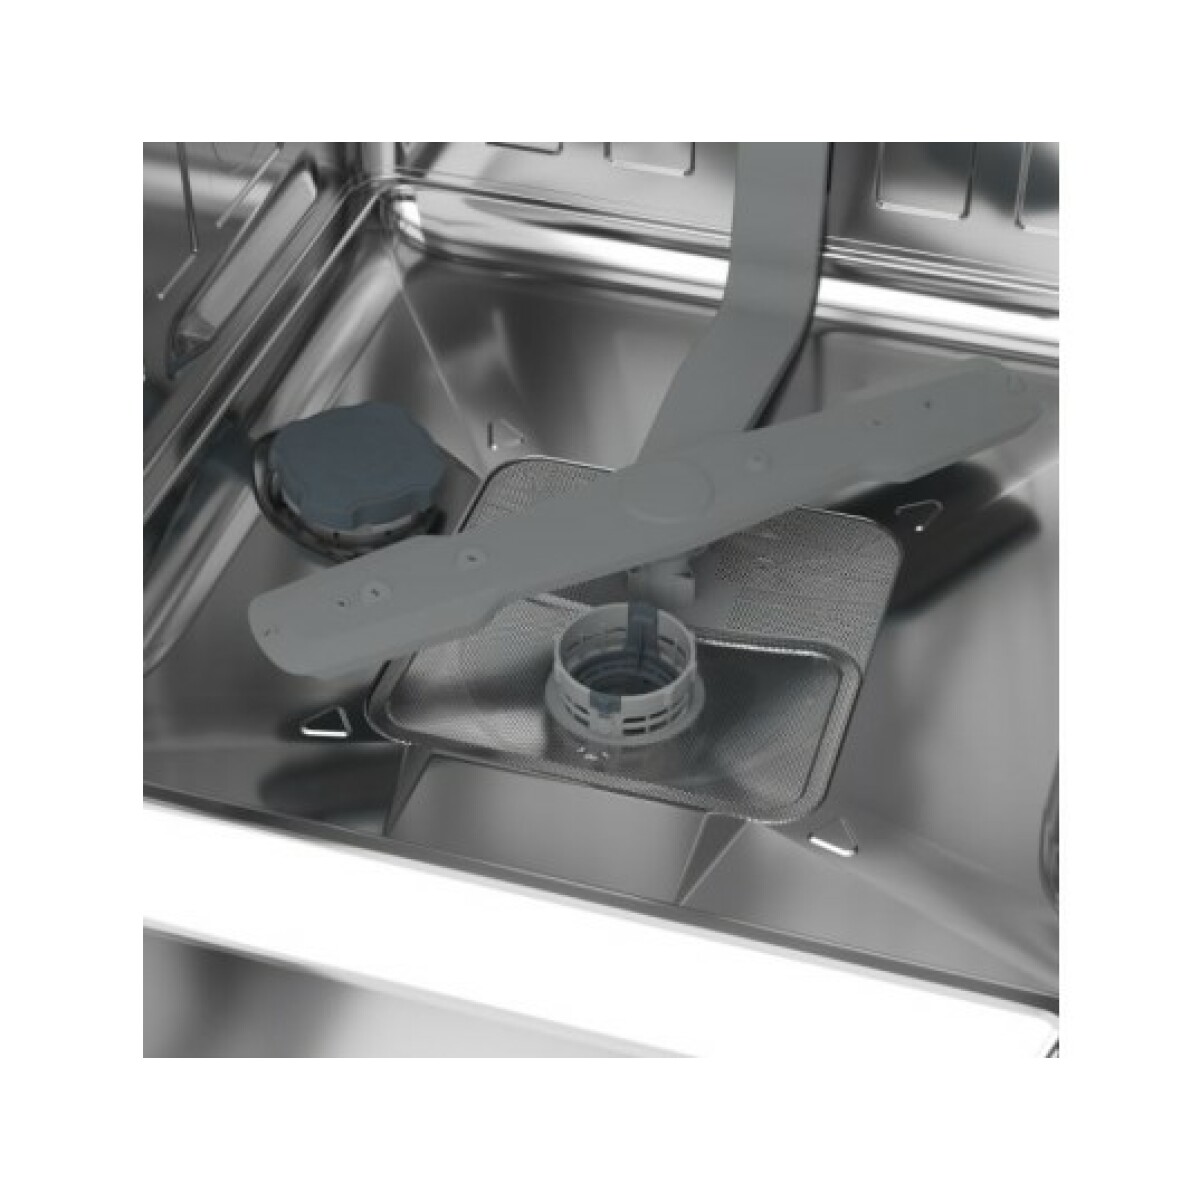 Lave-vaisselle Lave vaisselle tout integrable 60 cm PDIN25311, 13 couverts, 5 programmes, 47 db